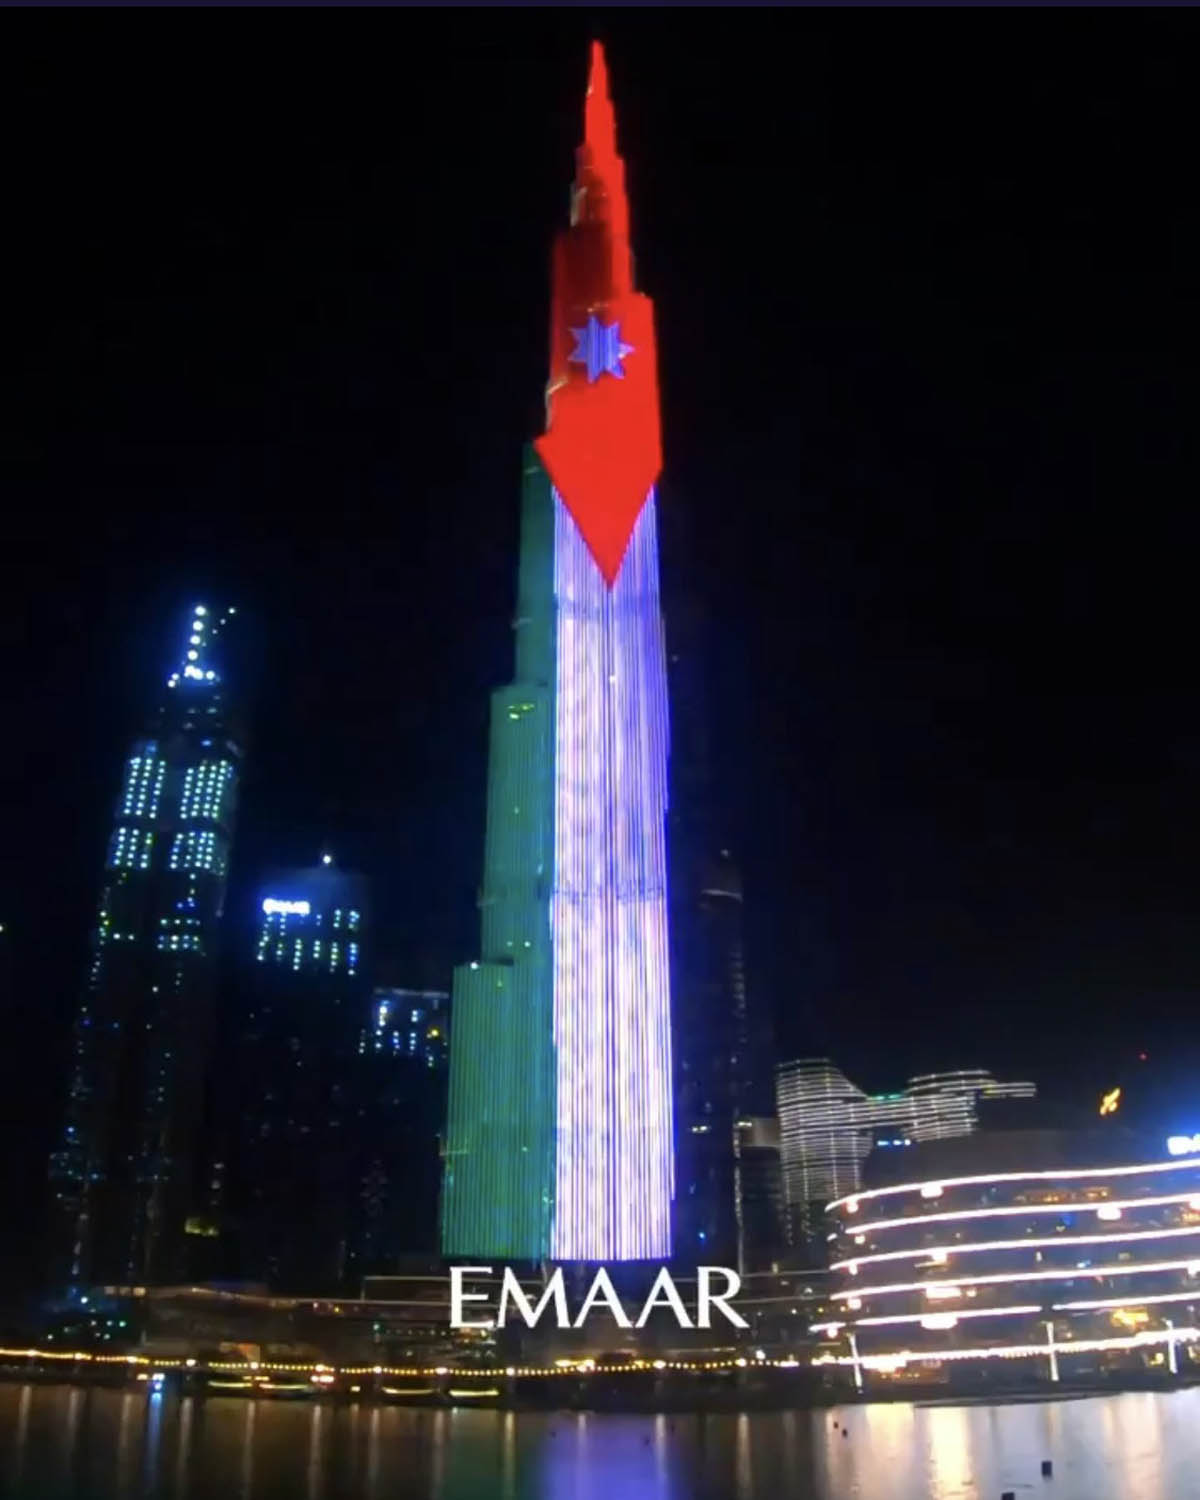 الامارات  تشارك الاردن احتفالاته بعيد الاستقلا ل،  فتضيء اعلى برج فيها  برج دبي  بالوان العلم الاردني